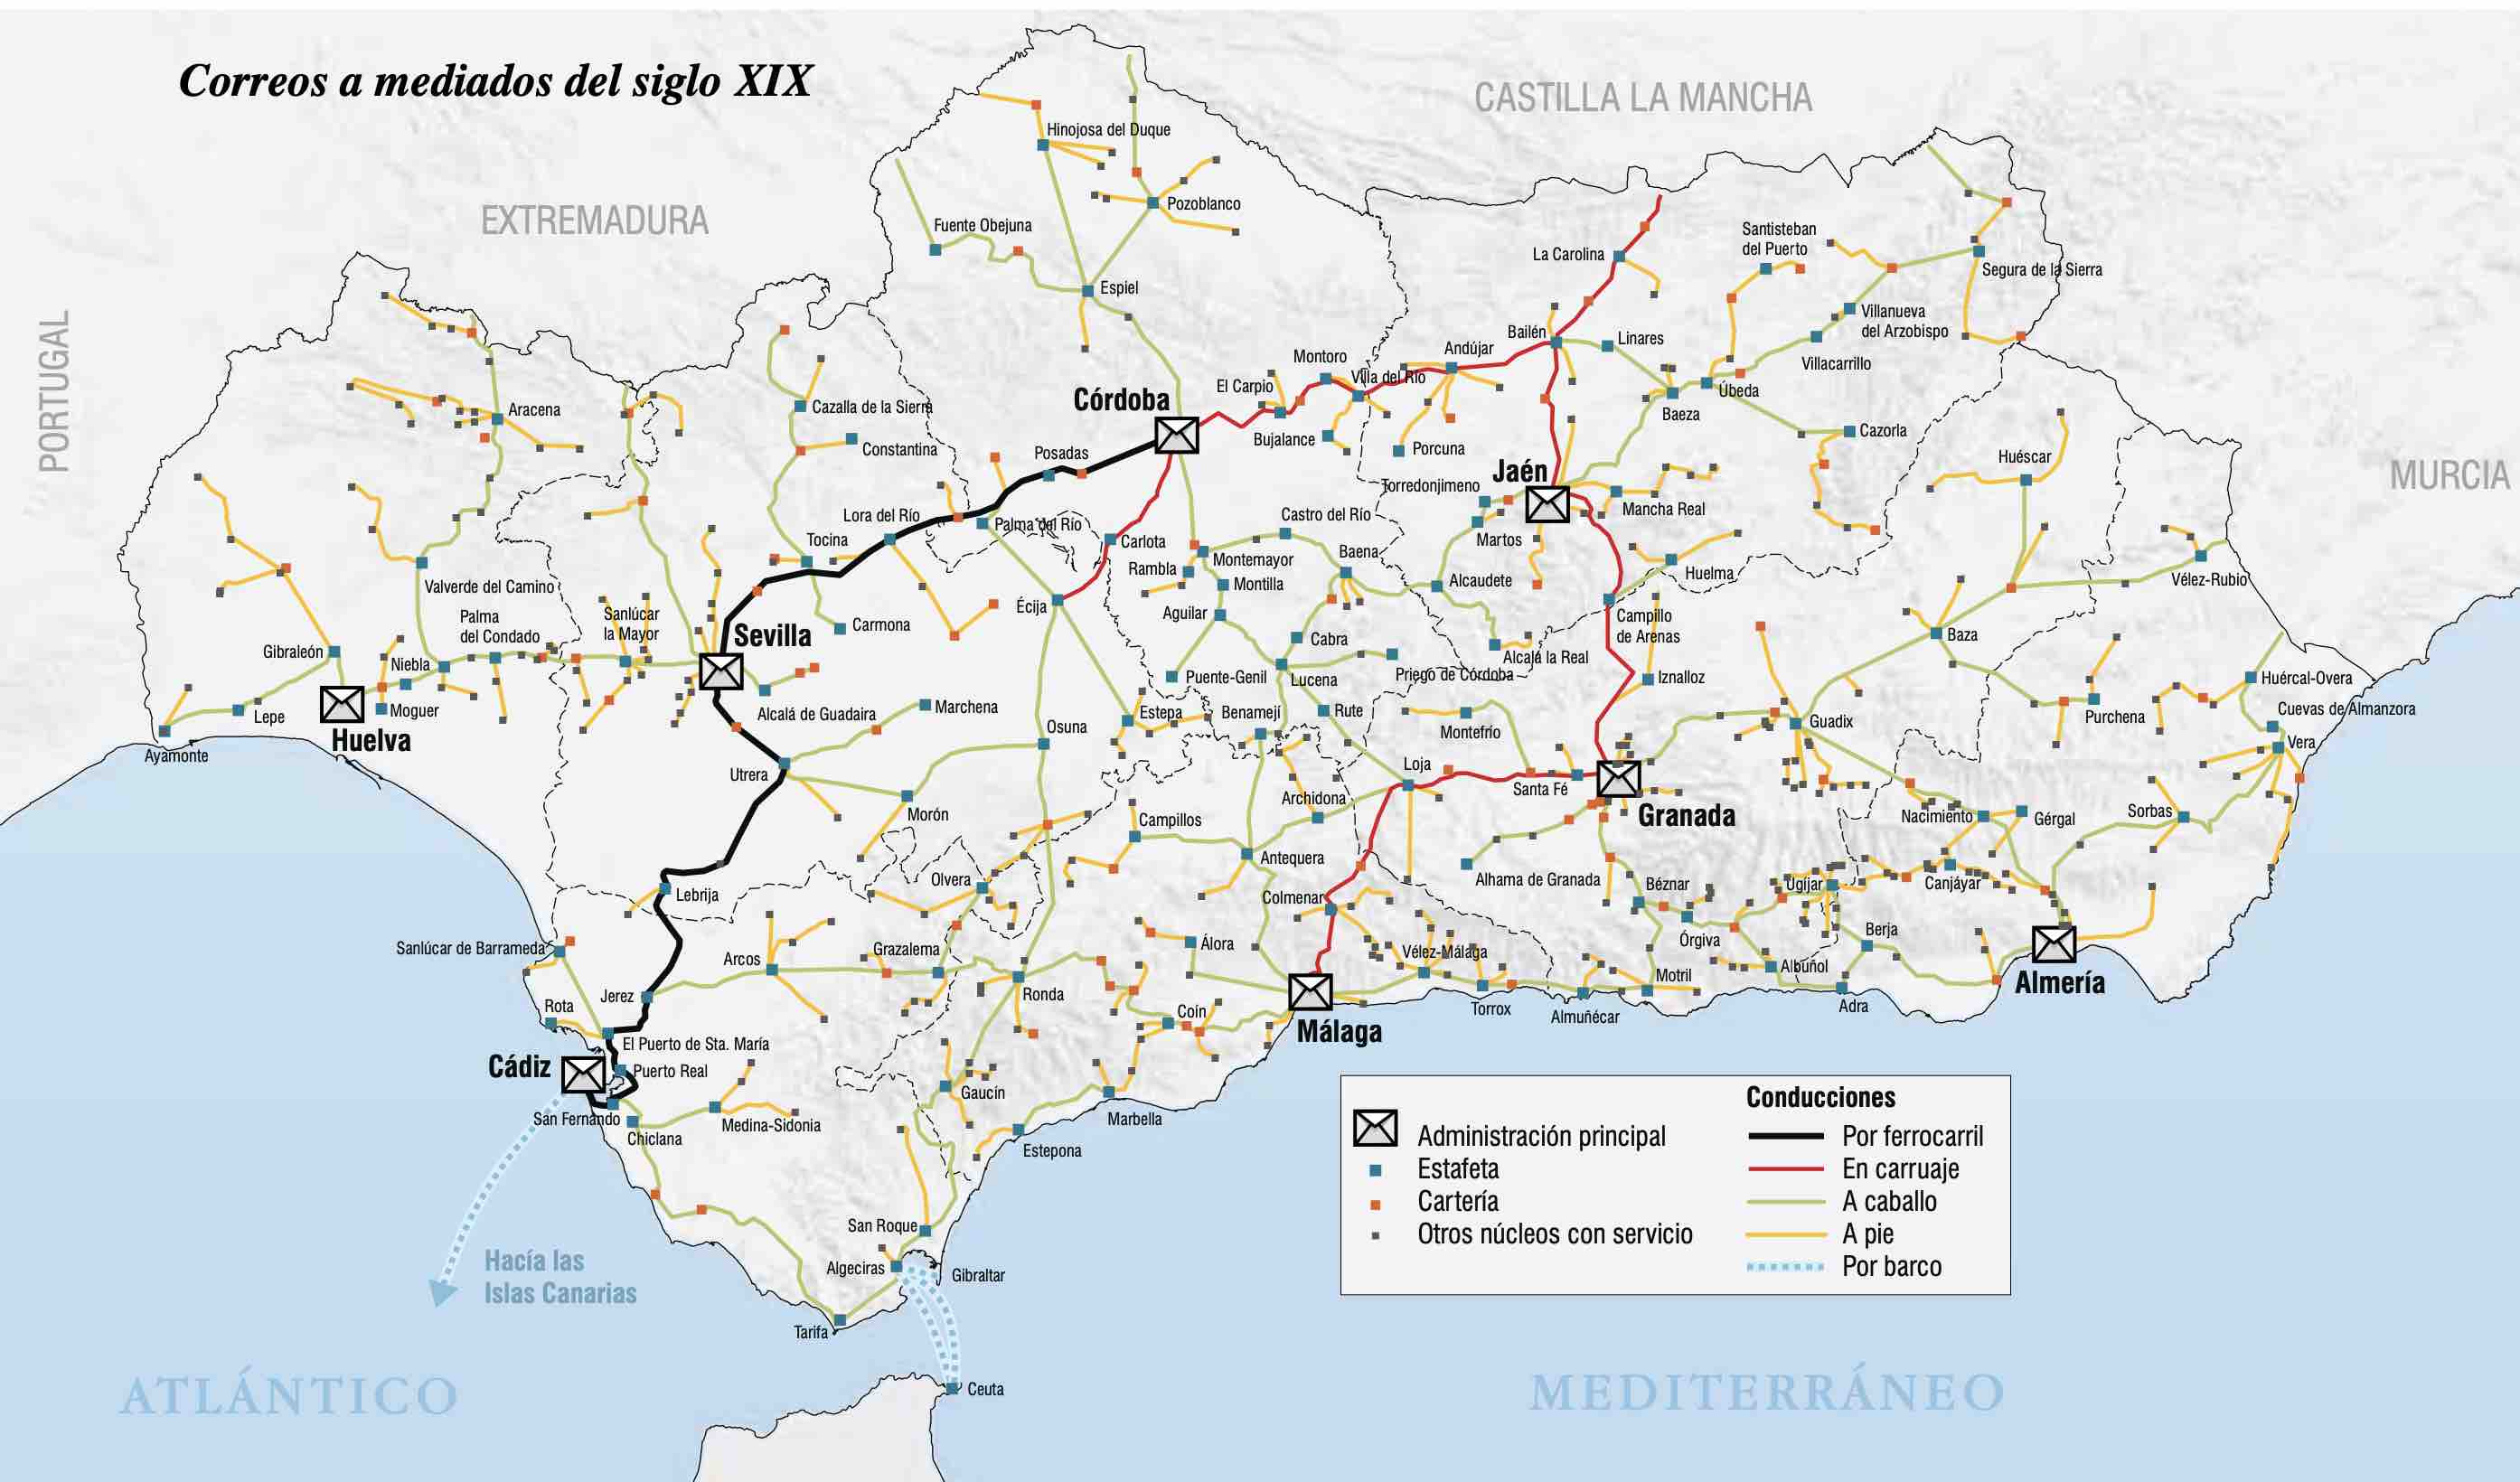 Figura 1: Fuente: Atlas de la Historia del Territorio de Andalucía de la Junta de Andalucía.